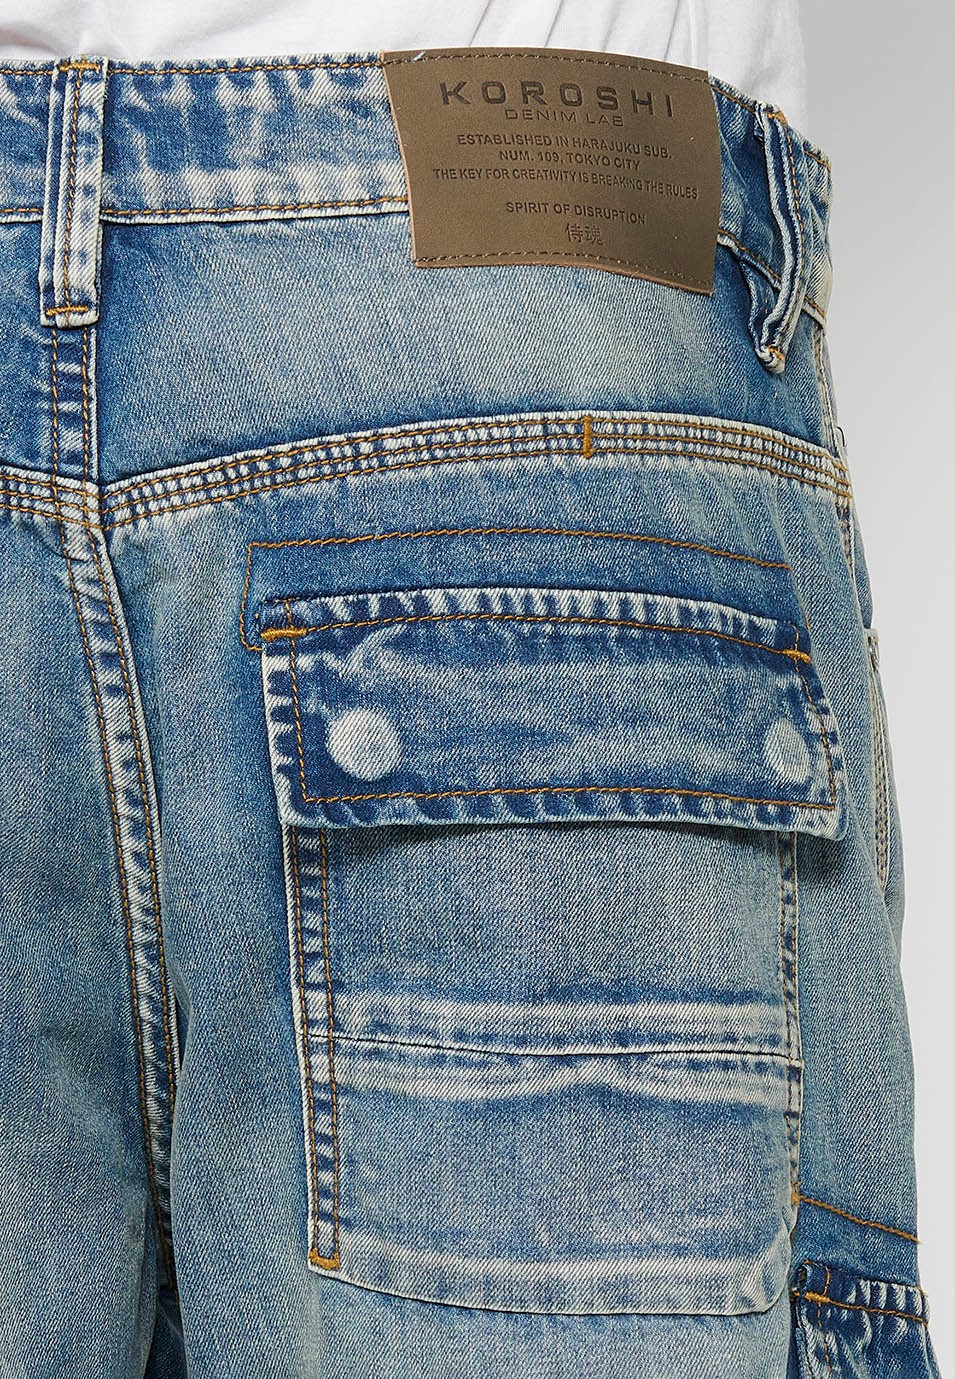 Pantalons càrrec llarg amb Tancament davanter amb cremallera i botó amb Butxaques laterals amb solapa de Color Blau per a Home 9